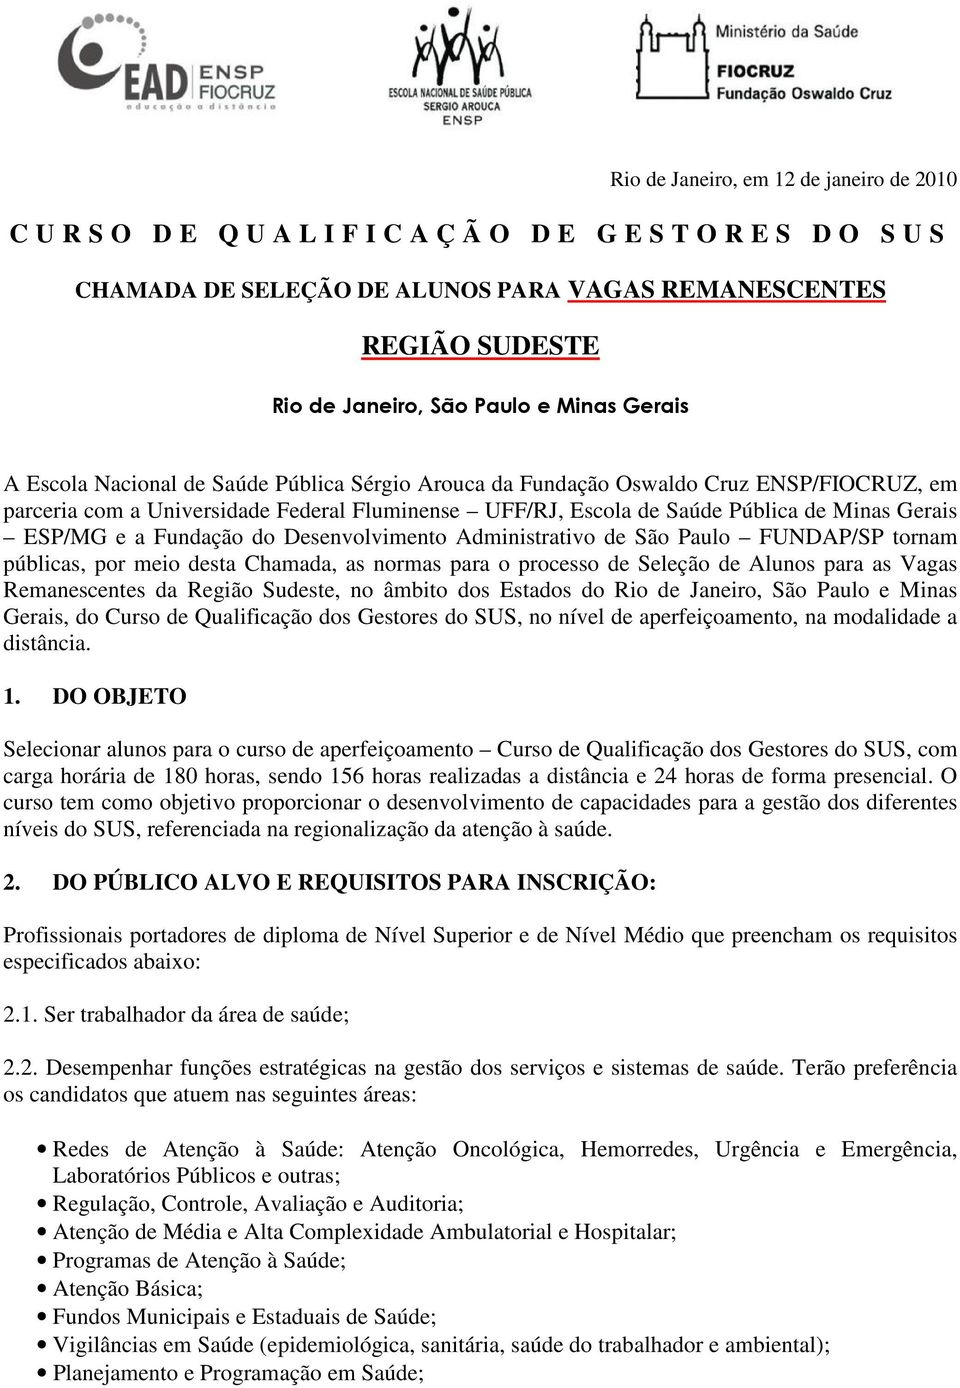 Gerais ESP/MG e a Fundação do Desenvolvimento Administrativo de São Paulo FUNDAP/SP tornam públicas, por meio desta Chamada, as normas para o processo de Seleção de Alunos para as Vagas Remanescentes